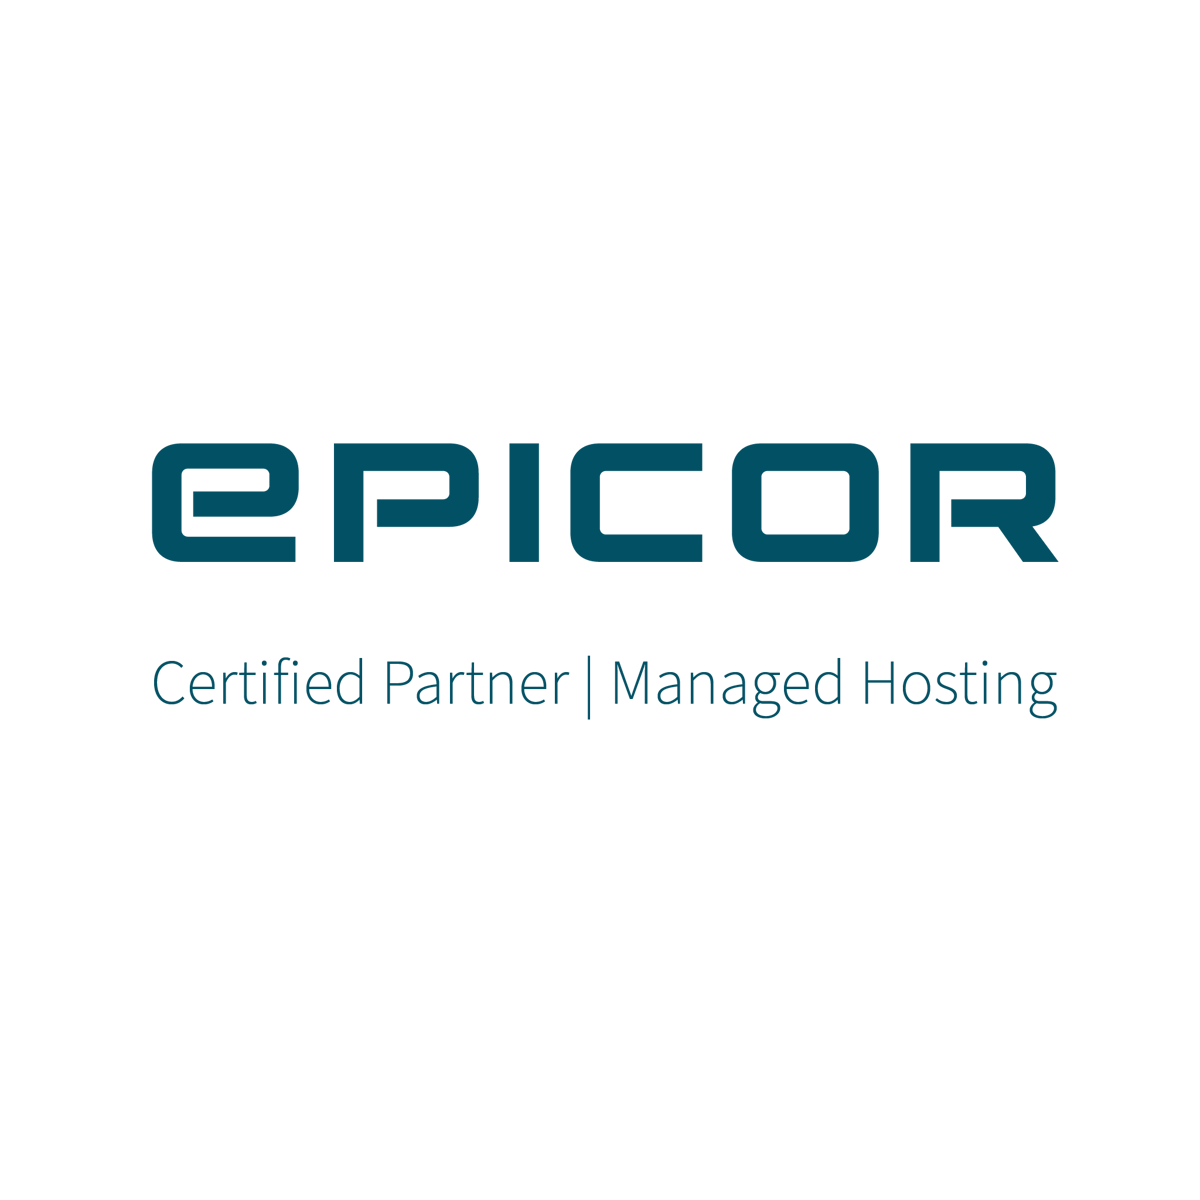 Epicor Certified Partner | Managed Hosting logo